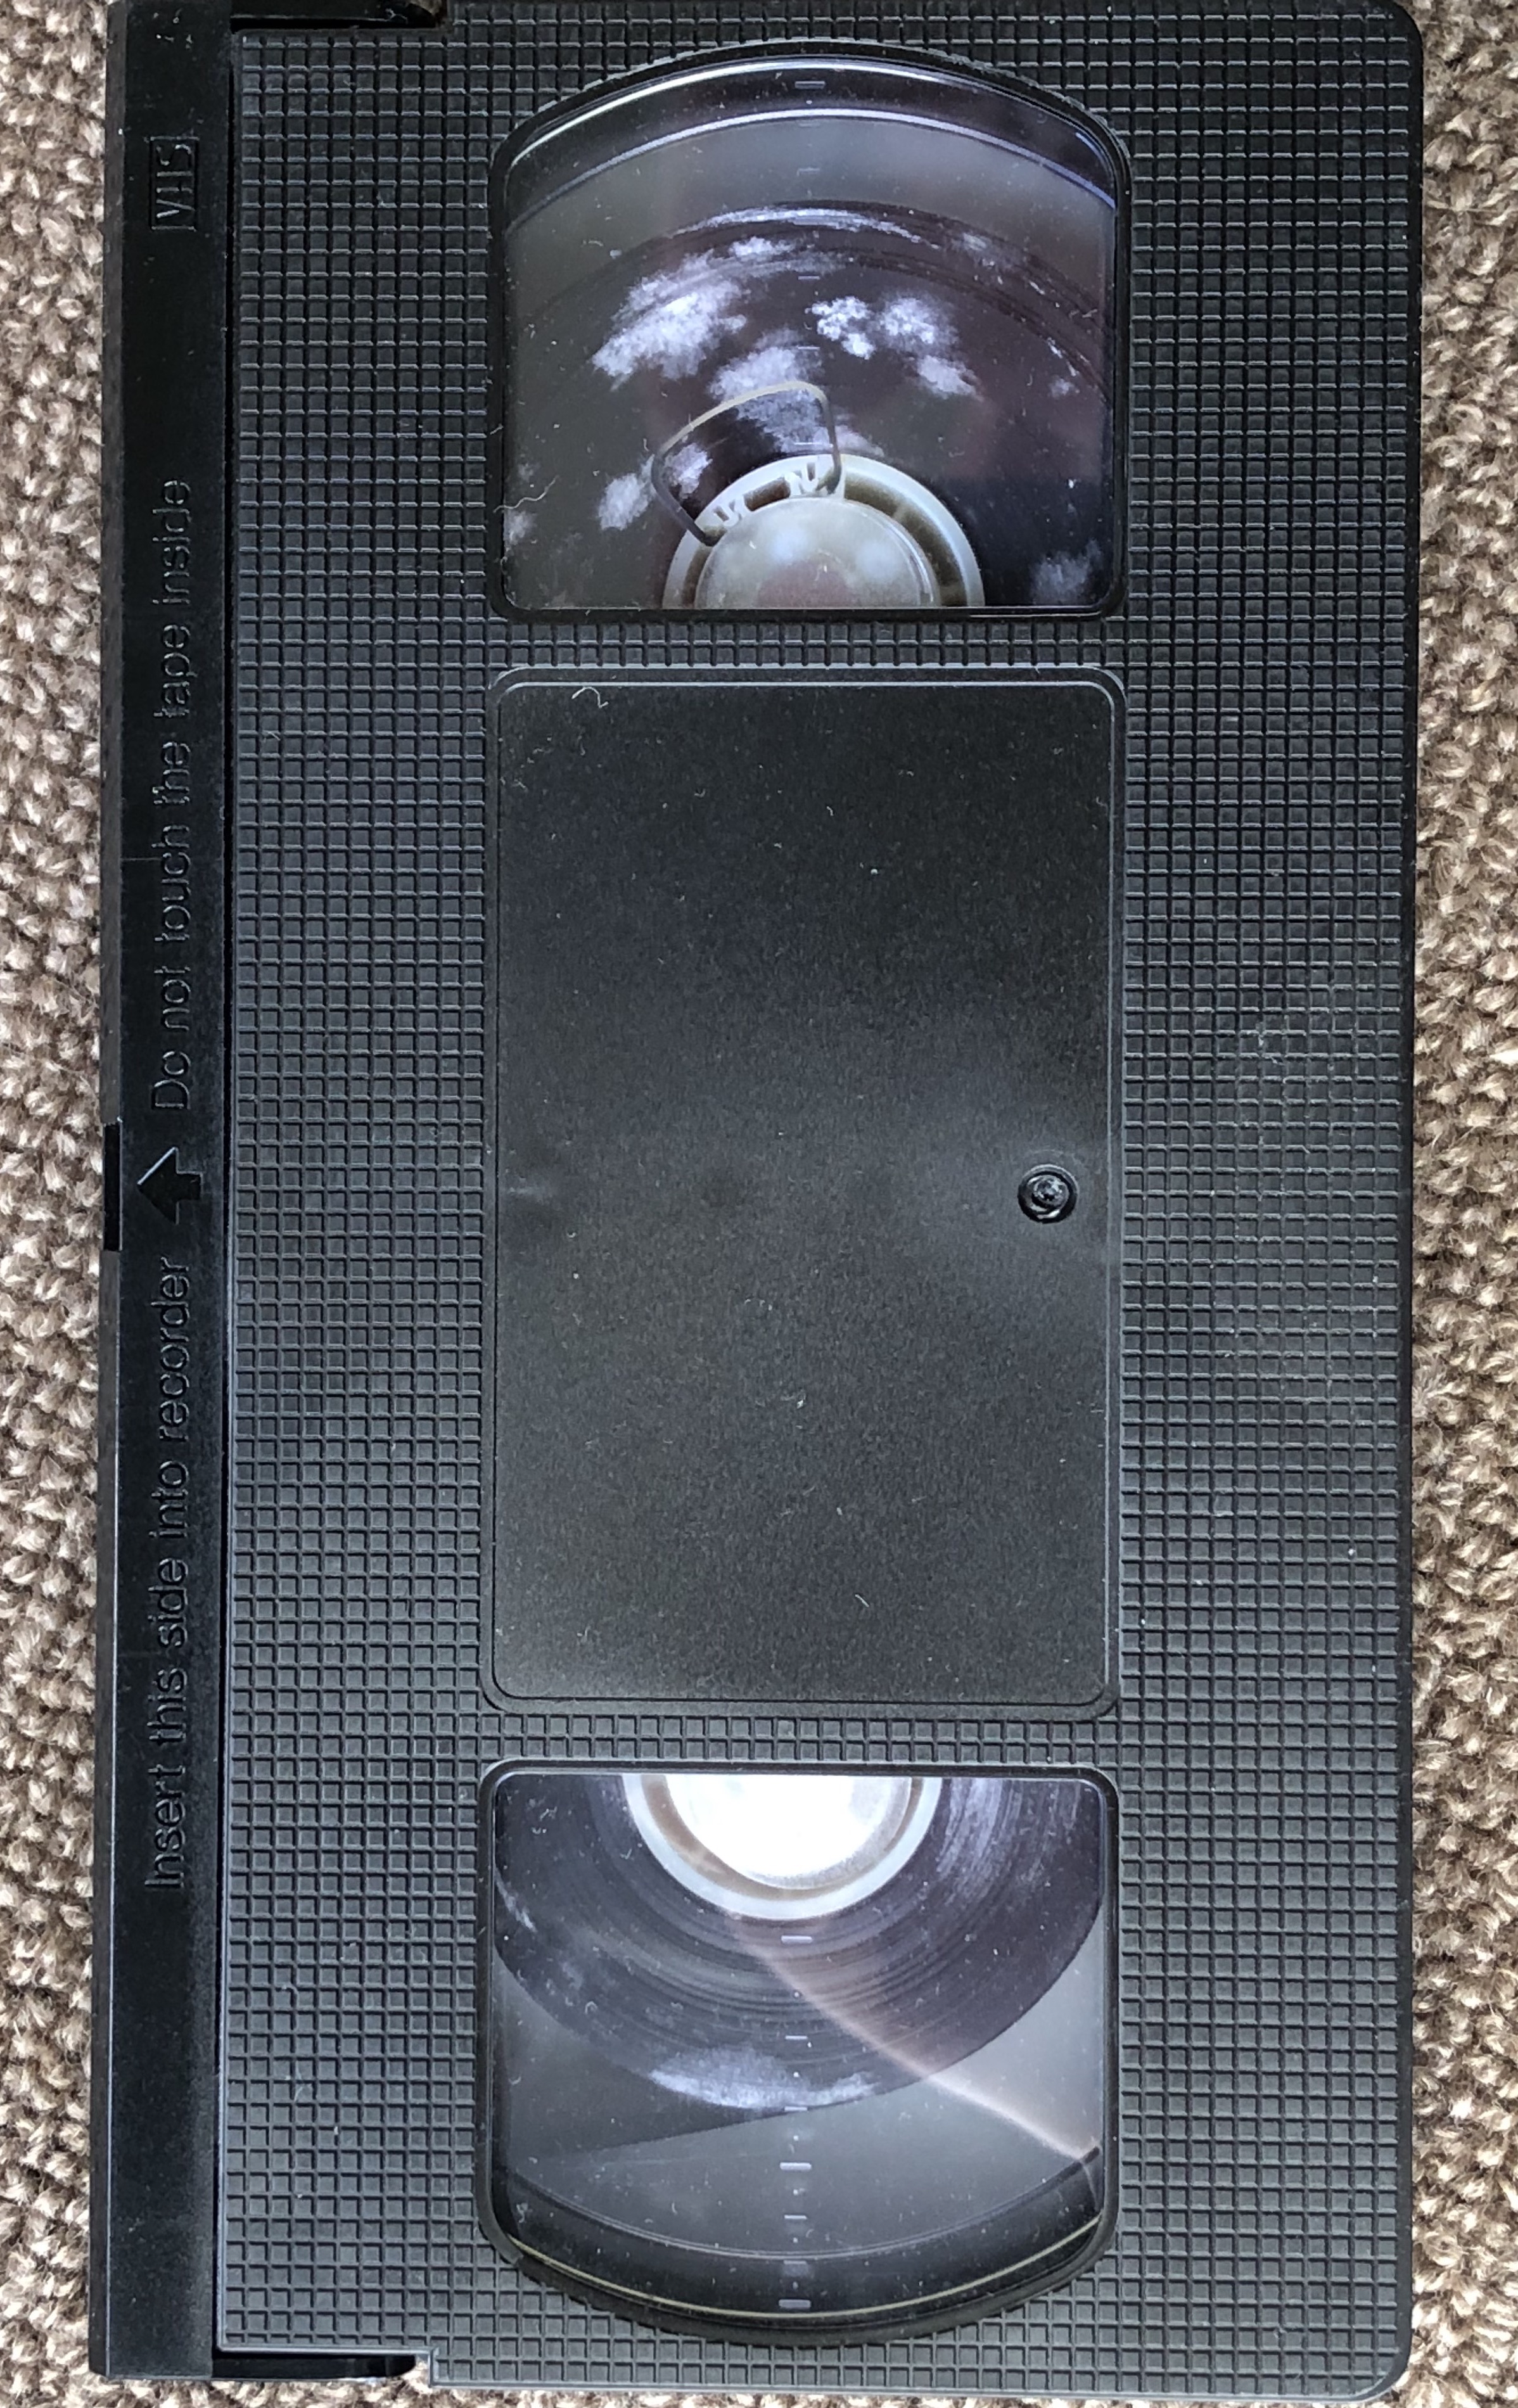 A Mouldy VHS Cassette Tape